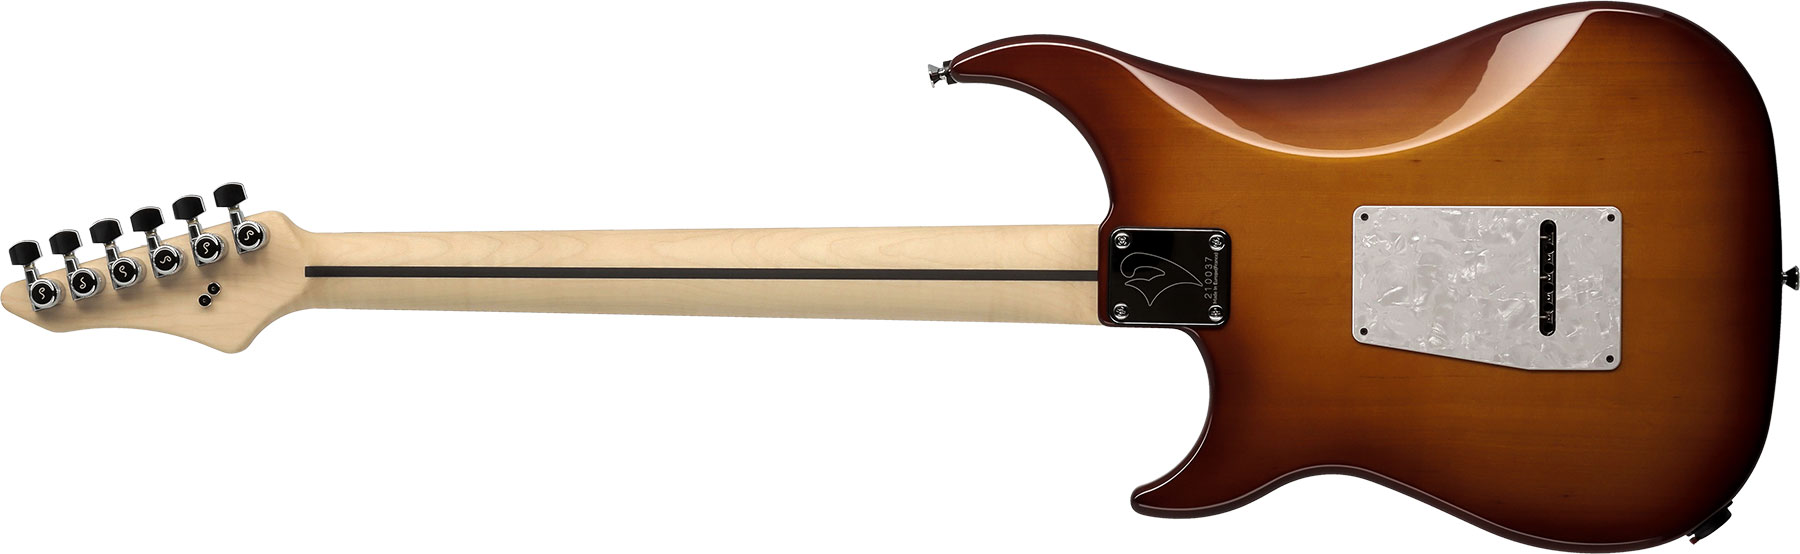 Vigier Excalibur Supraa Hsh Trem Rw - Antique Violin - Guitare Électrique Forme Str - Variation 1